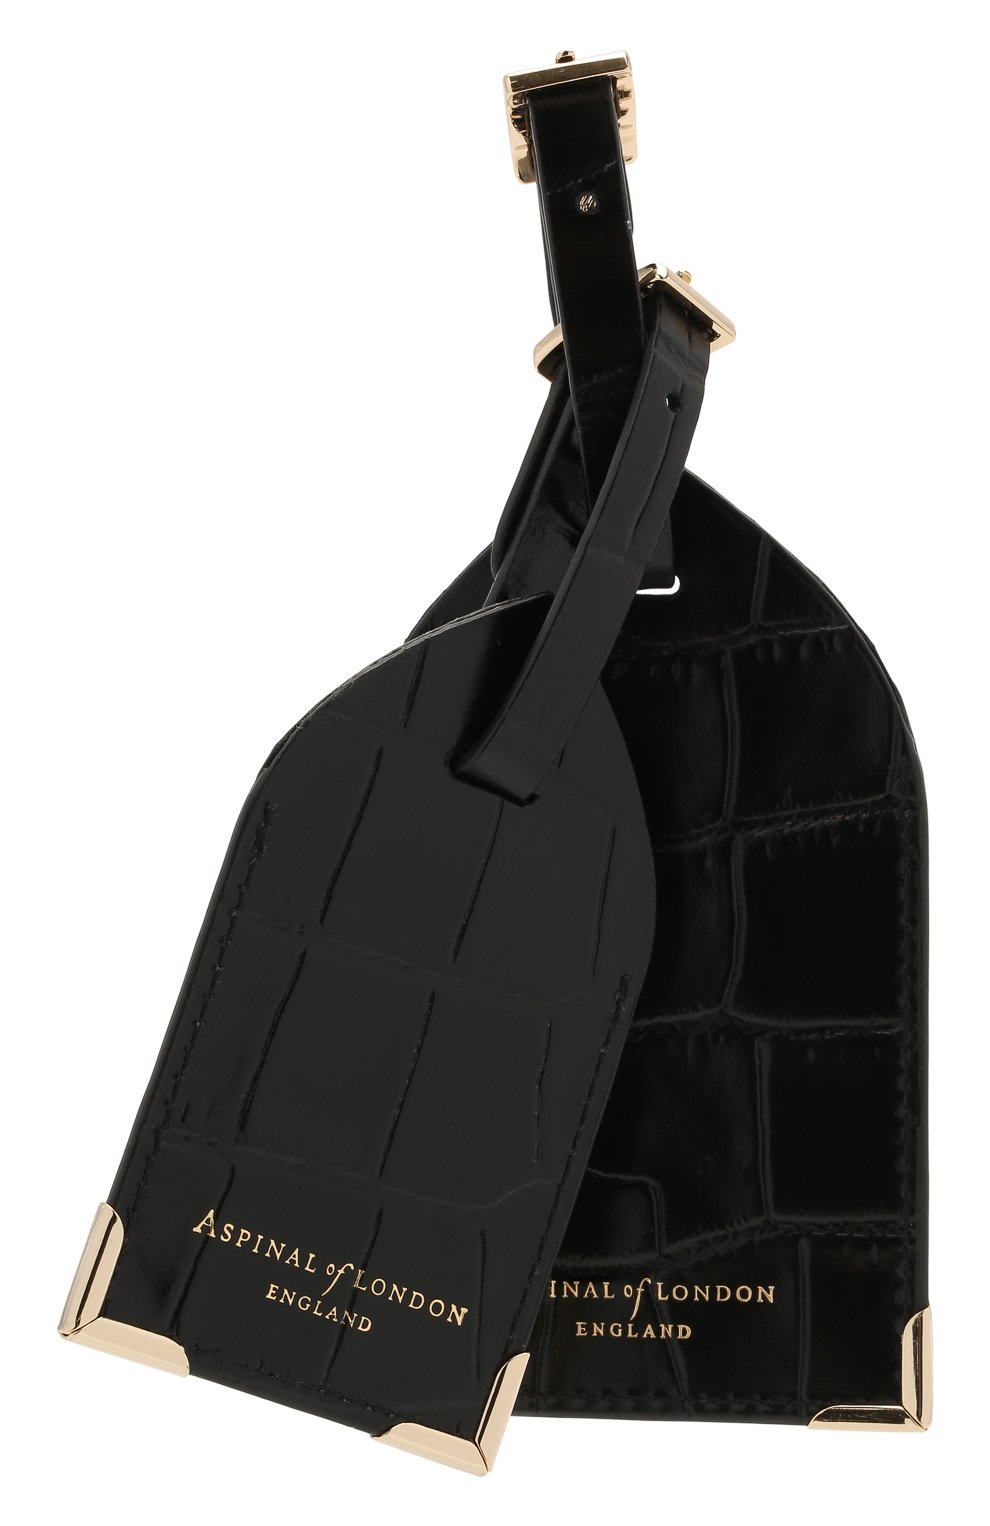 Аксессуары для сумок Aspinal of London, Кожаная багажная бирка Aspinal of London, Великобритания, Чёрный, Кожа натуральная: 100%;, 11969213  - купить